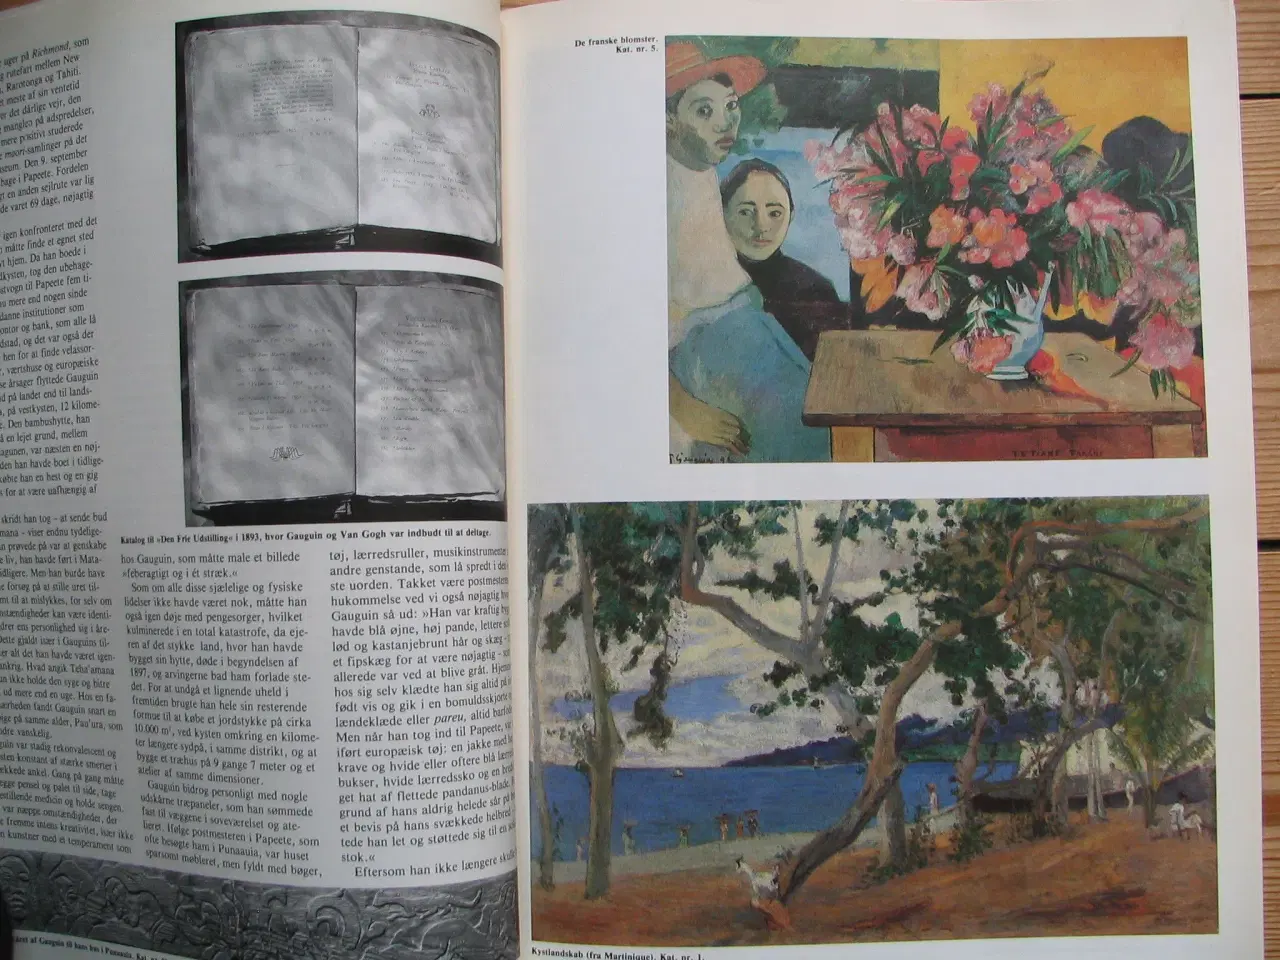 Billede 3 - Gauguin (1848-1903), på Tahiti 